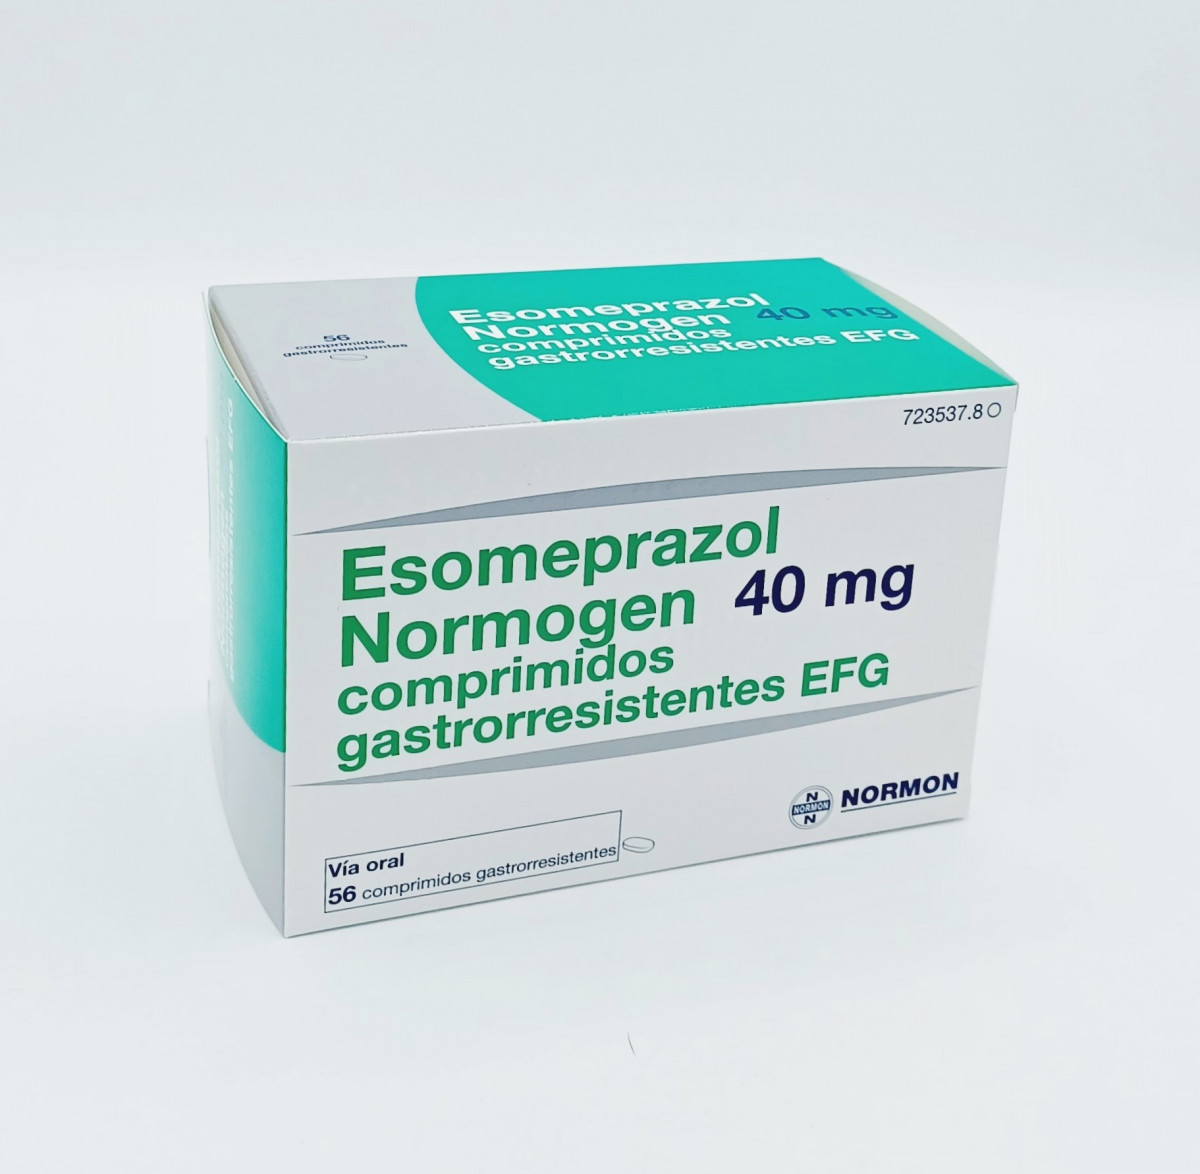 ESOMEPRAZOL NORMOGEN 40 MG COMPRIMIDOS GASTRORRESISTENTES EFG 28 comprimidos (Blister PVC/PVDC-Al) fotografía del envase.